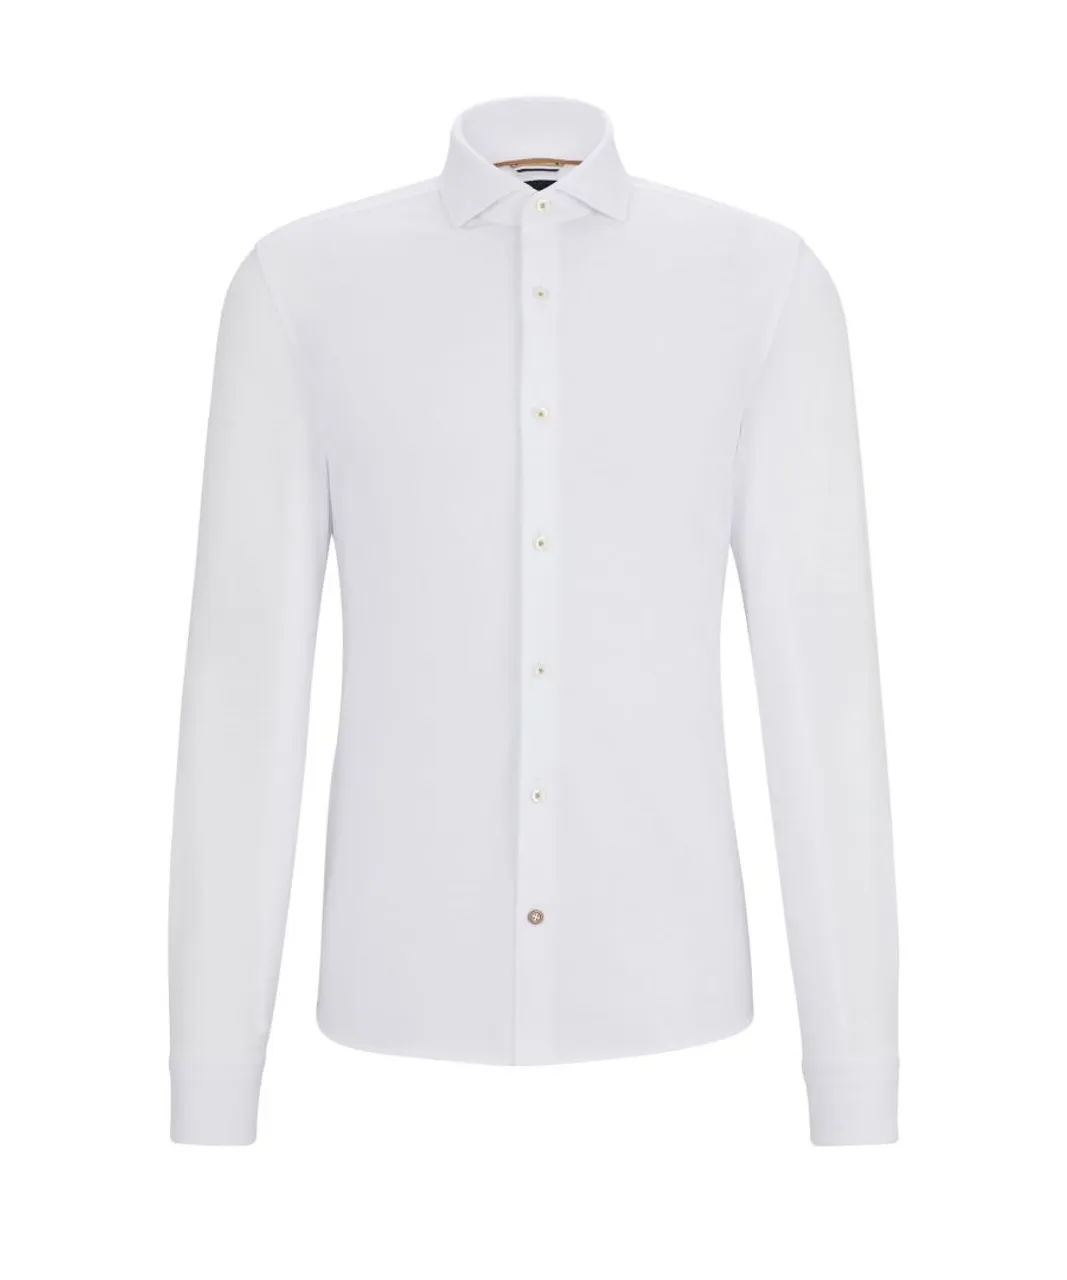 Hugo Boss Black Mens C-hal-spread Collar Long Sleeved Shirt White